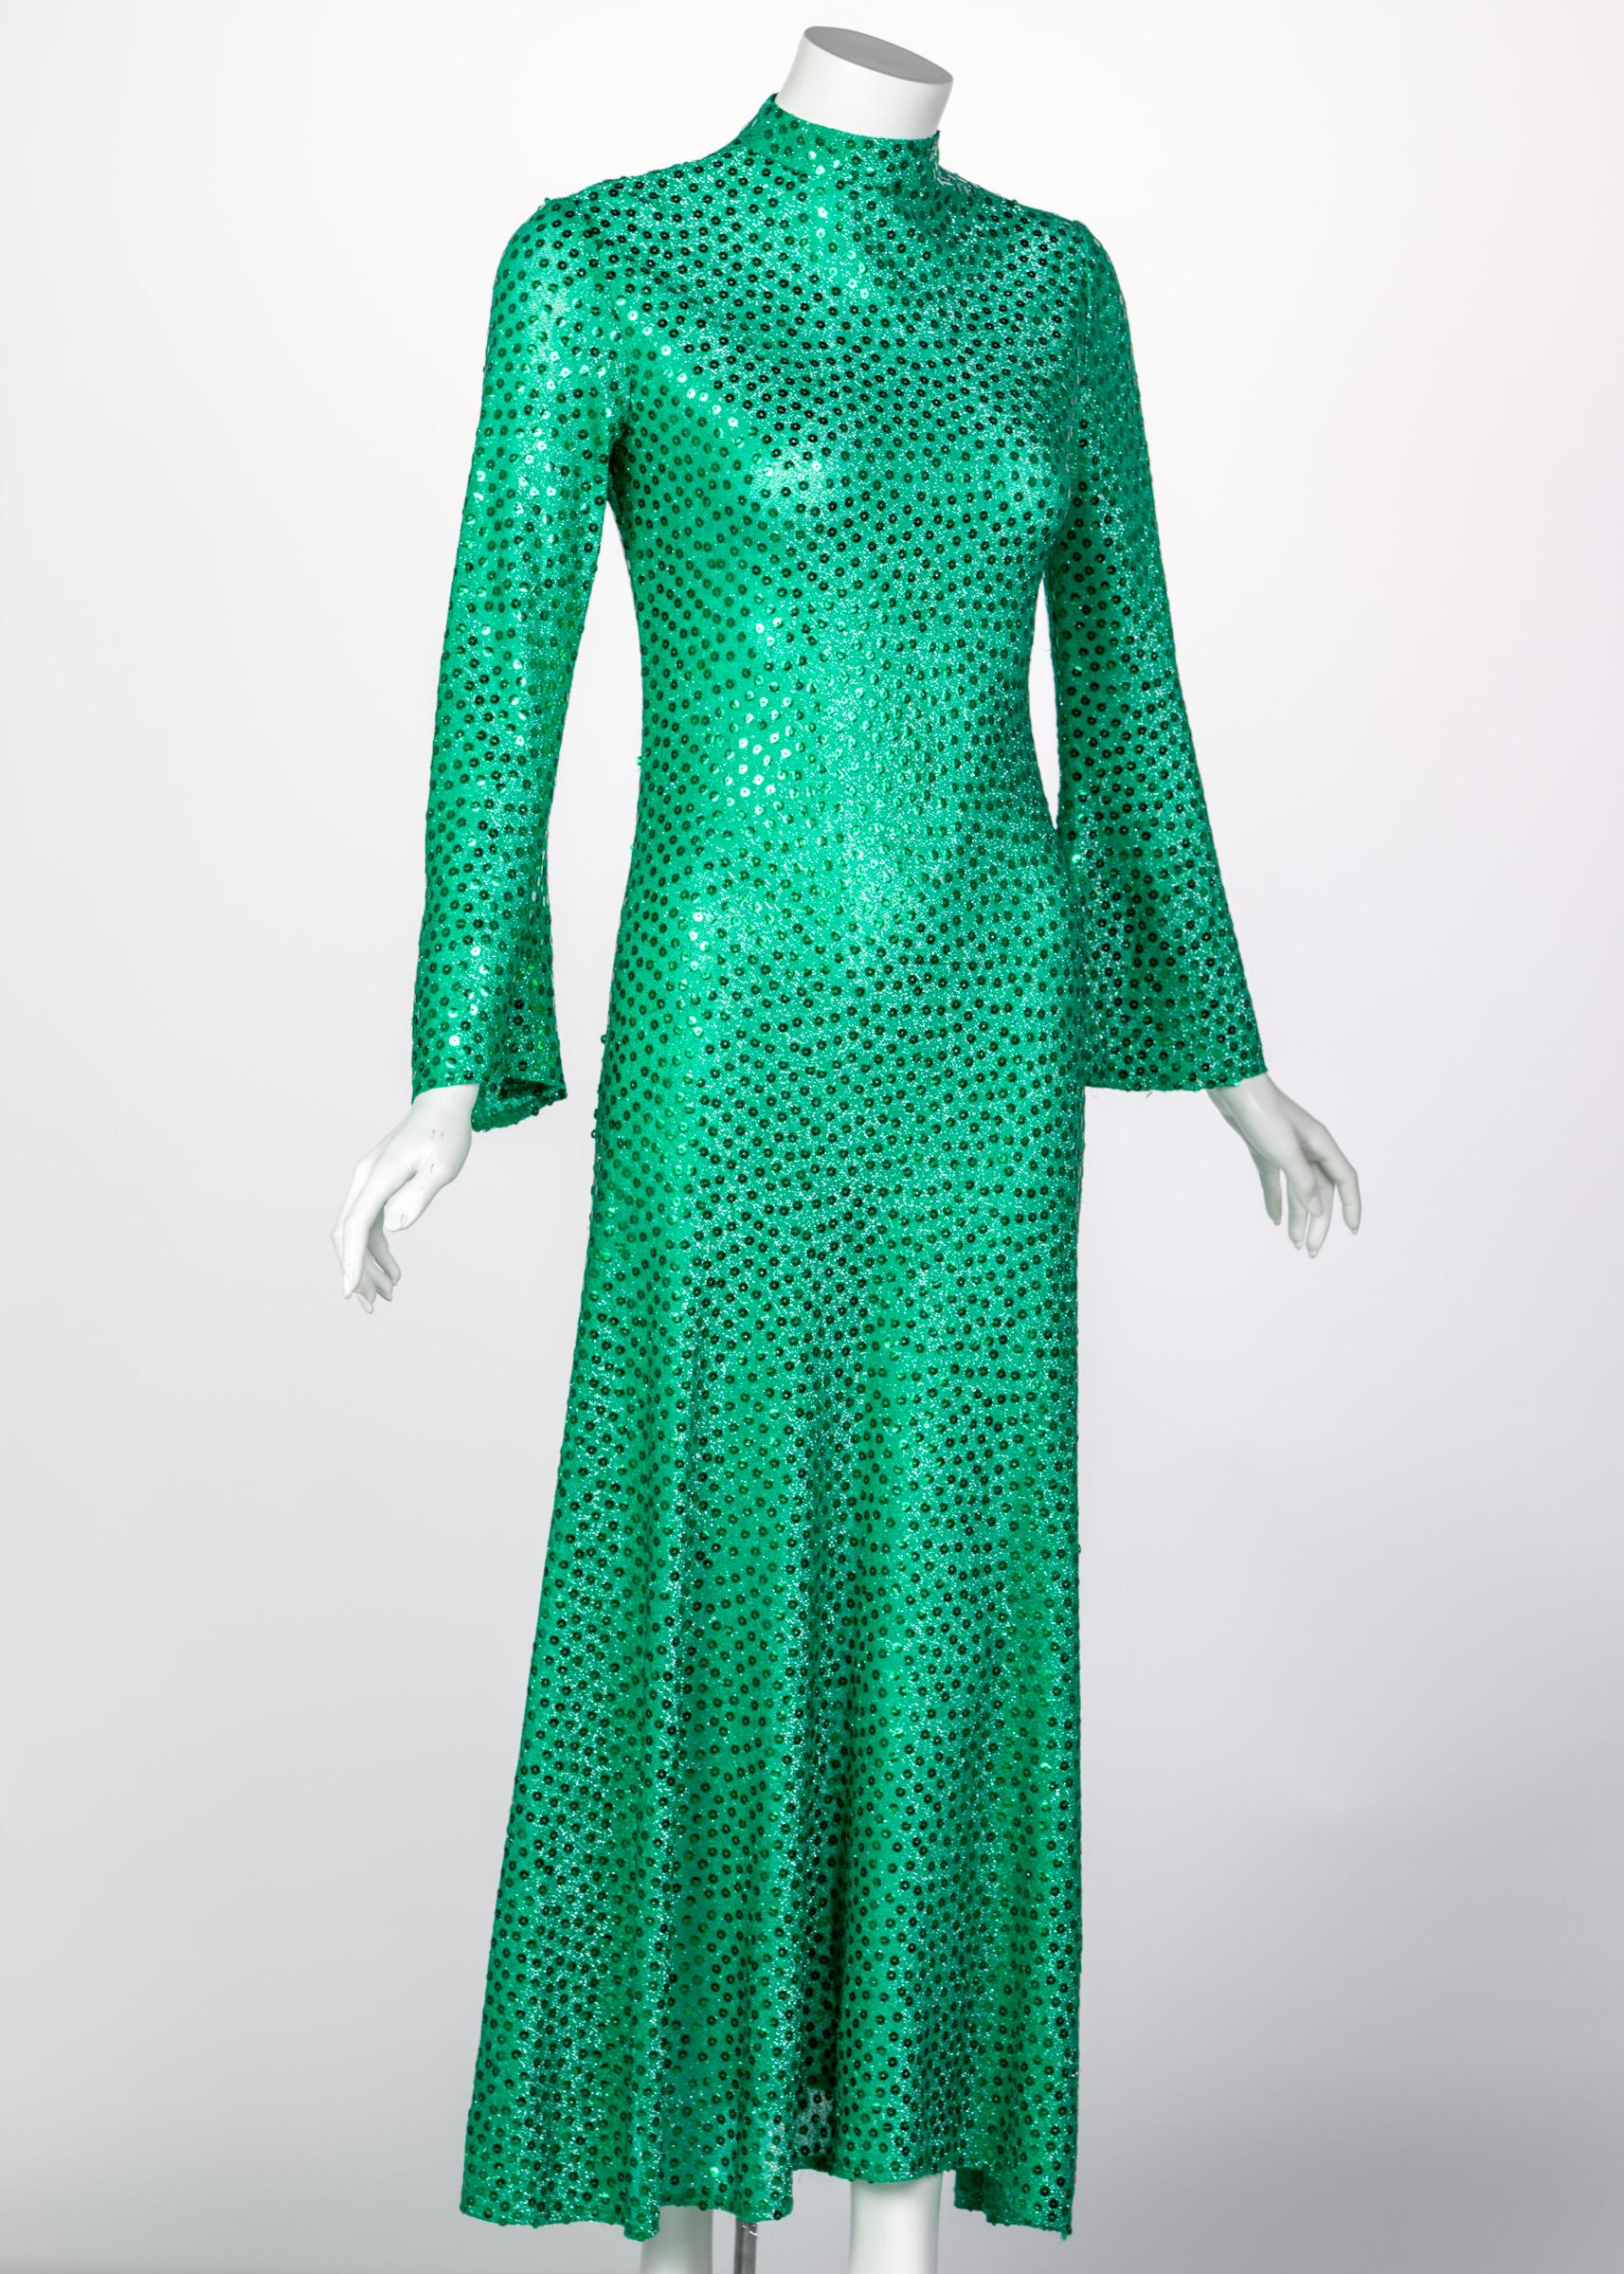 Mollie Parnis Smaragdgrünes Paillettenkleid mit Halsausschnitt, 1960er Jahre (Grün) im Angebot